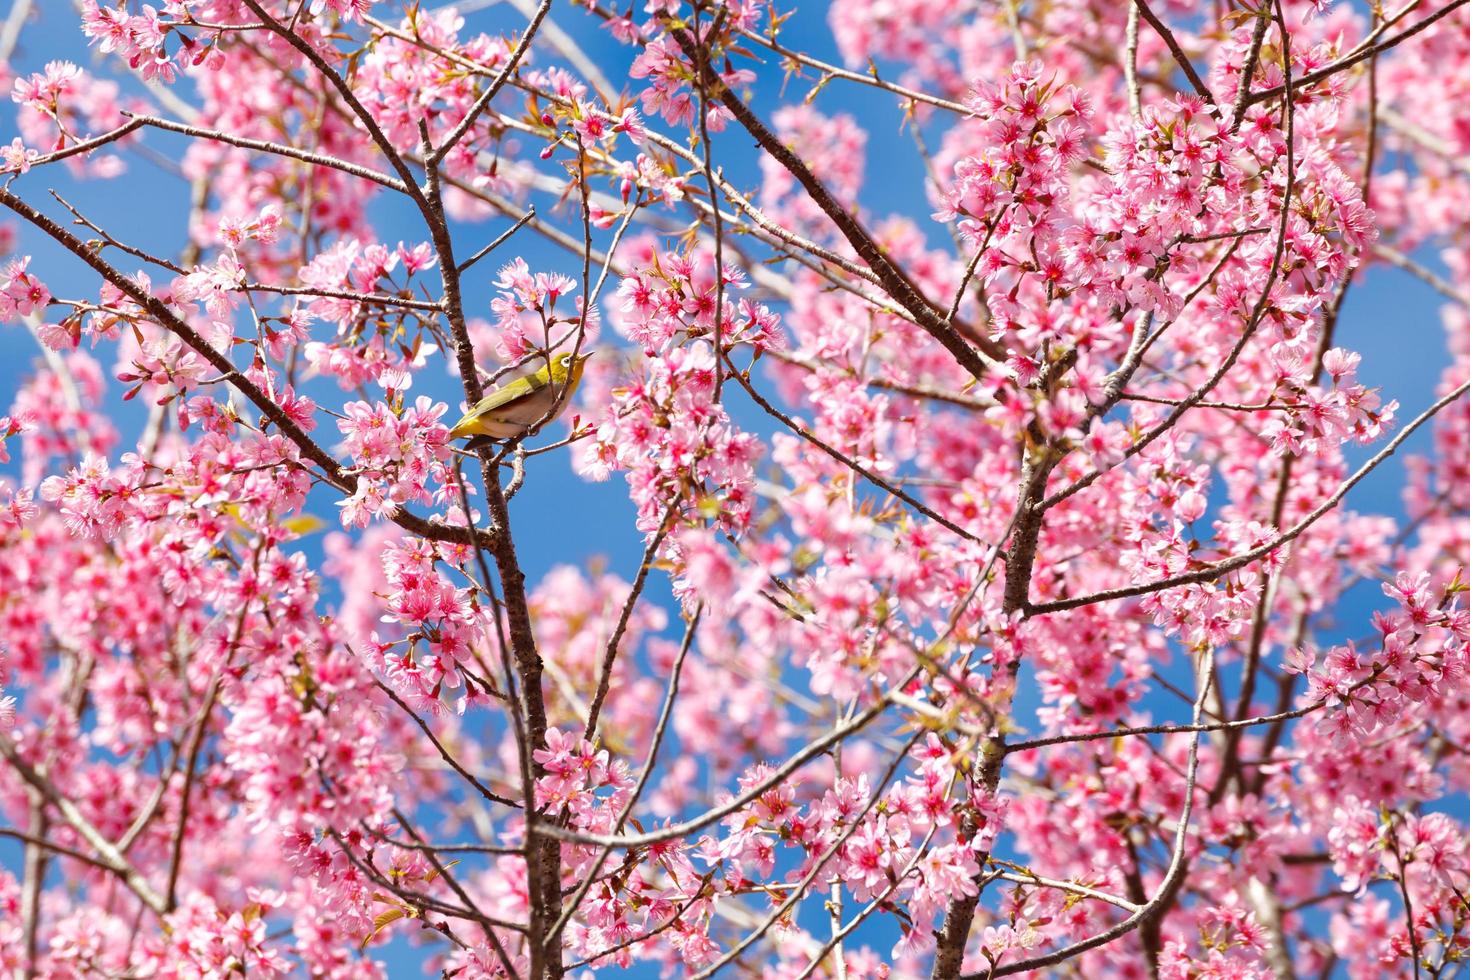 white-eye bird on cherry blossom and sakura photo